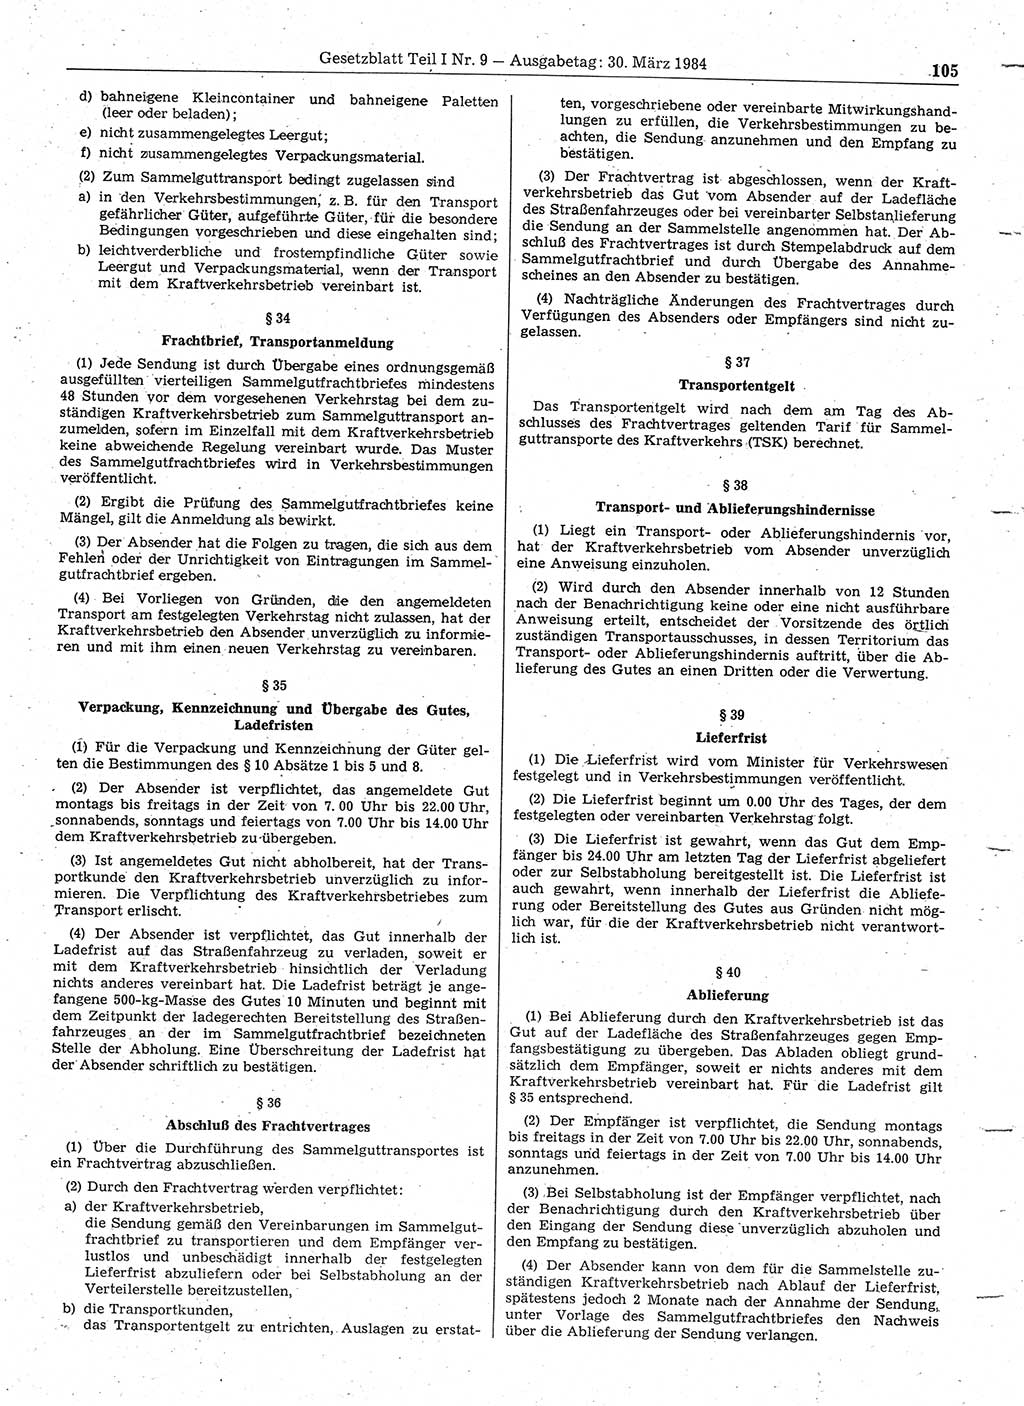 Gesetzblatt (GBl.) der Deutschen Demokratischen Republik (DDR) Teil Ⅰ 1984, Seite 105 (GBl. DDR Ⅰ 1984, S. 105)